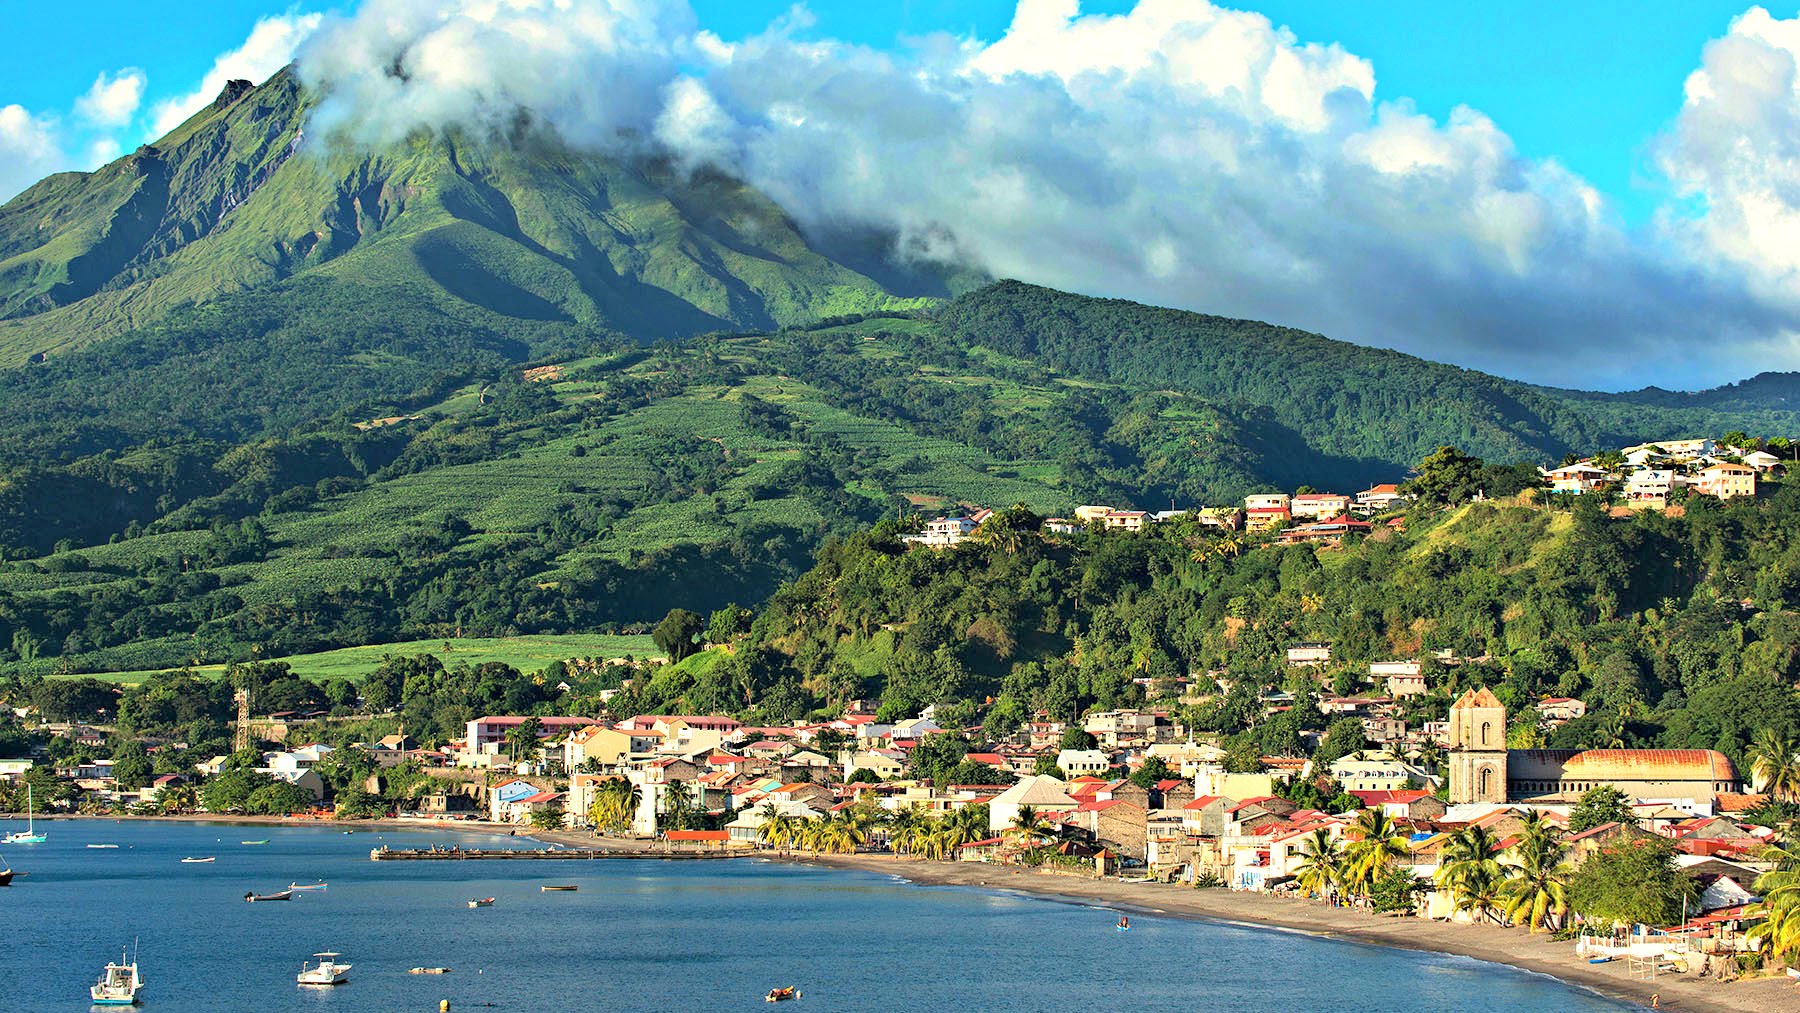 Hướng dẫn xin visa Martinique du lịch tự túc